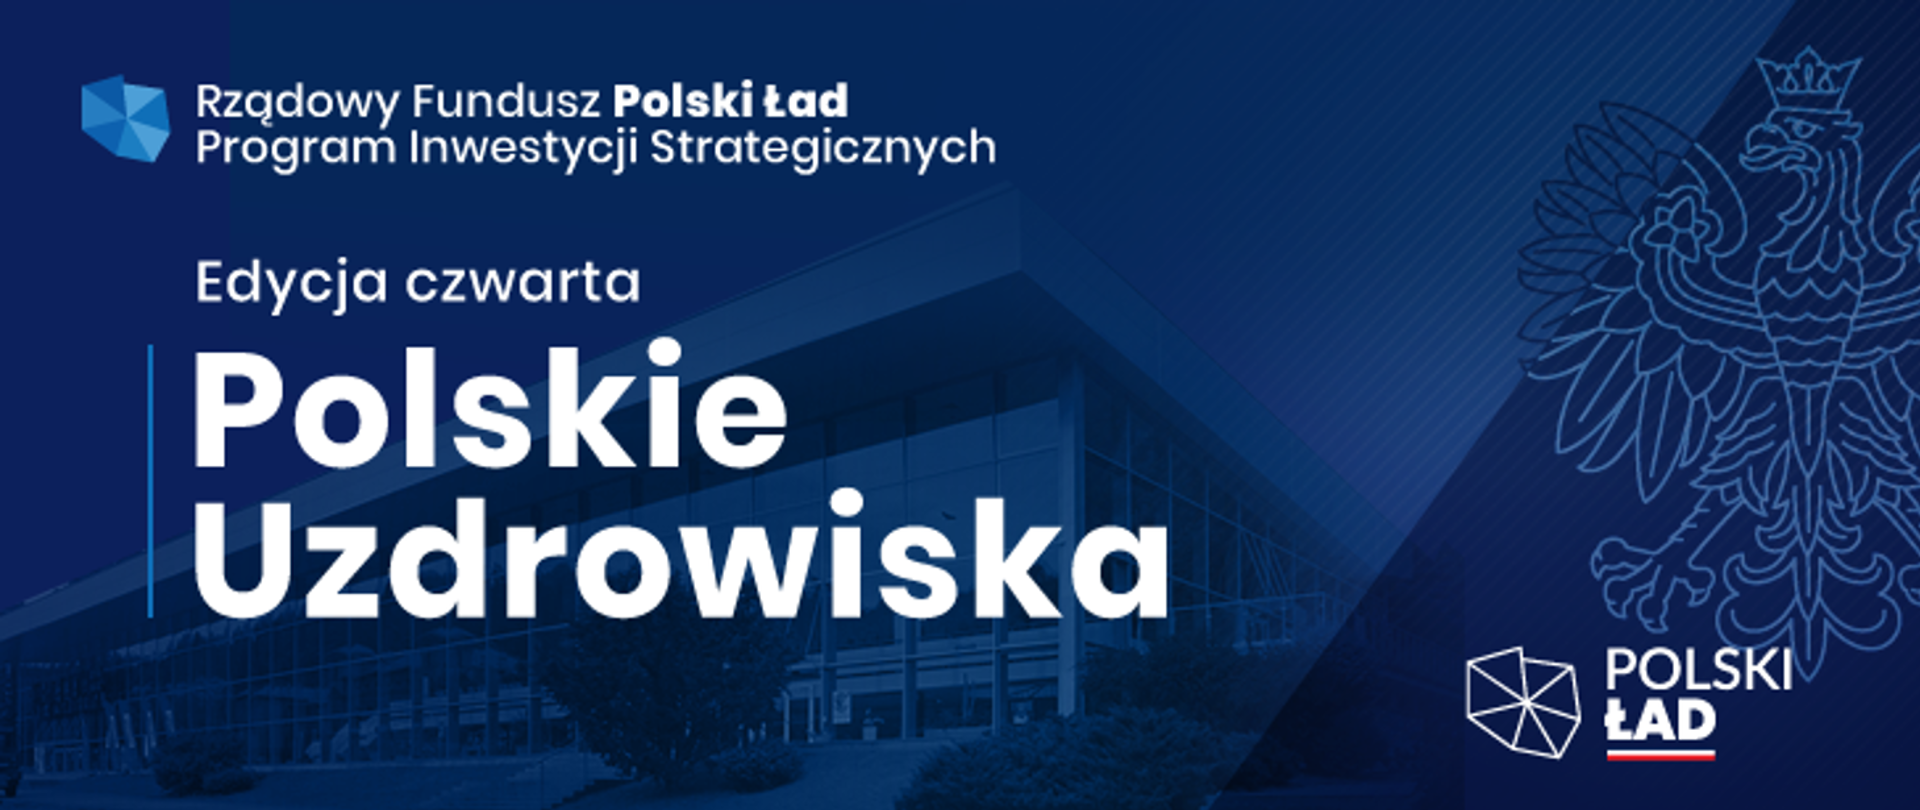 Ponad 240 mln zł dla gmin uzdrowiskowych w ramach Rządowego Funduszu Polski Ład: Program Inwestycji Strategicznych!